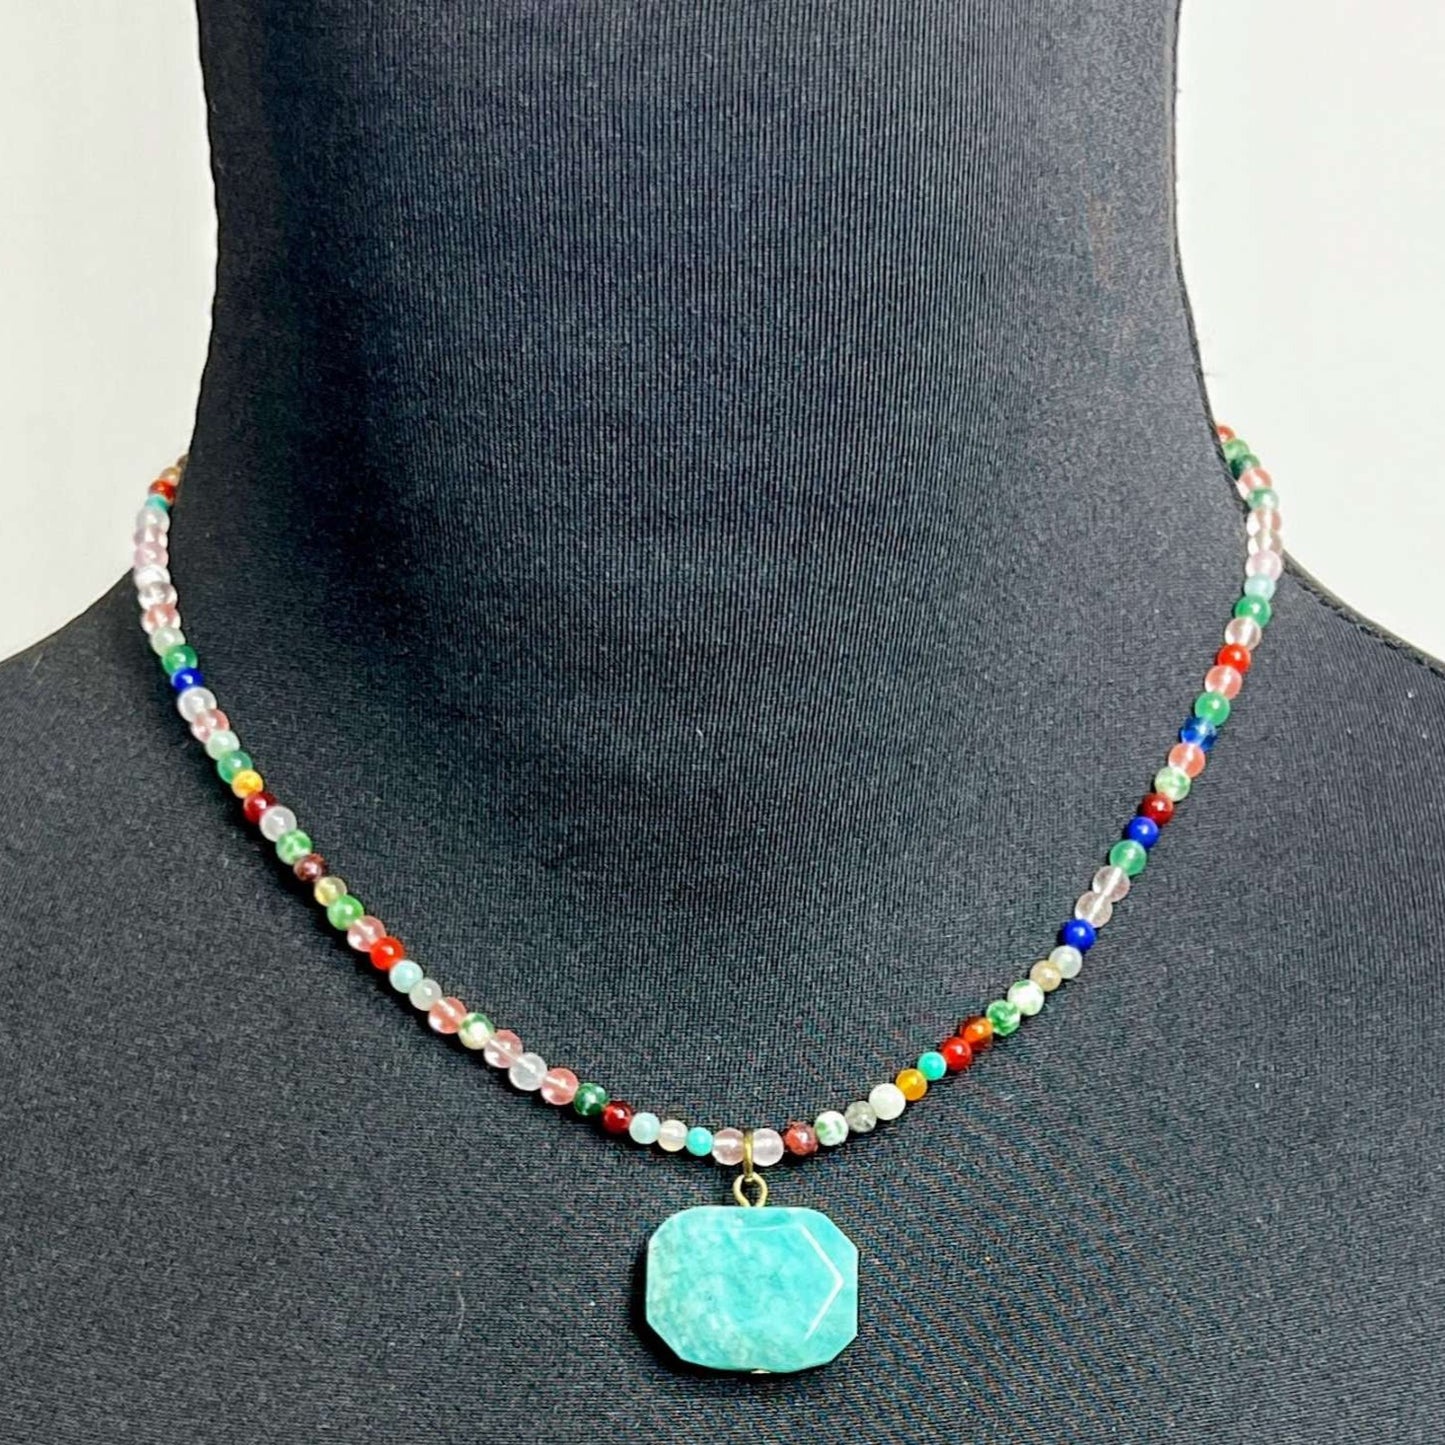 Boho Amazonite Pendant with Mixed Crystal Bead Necklace